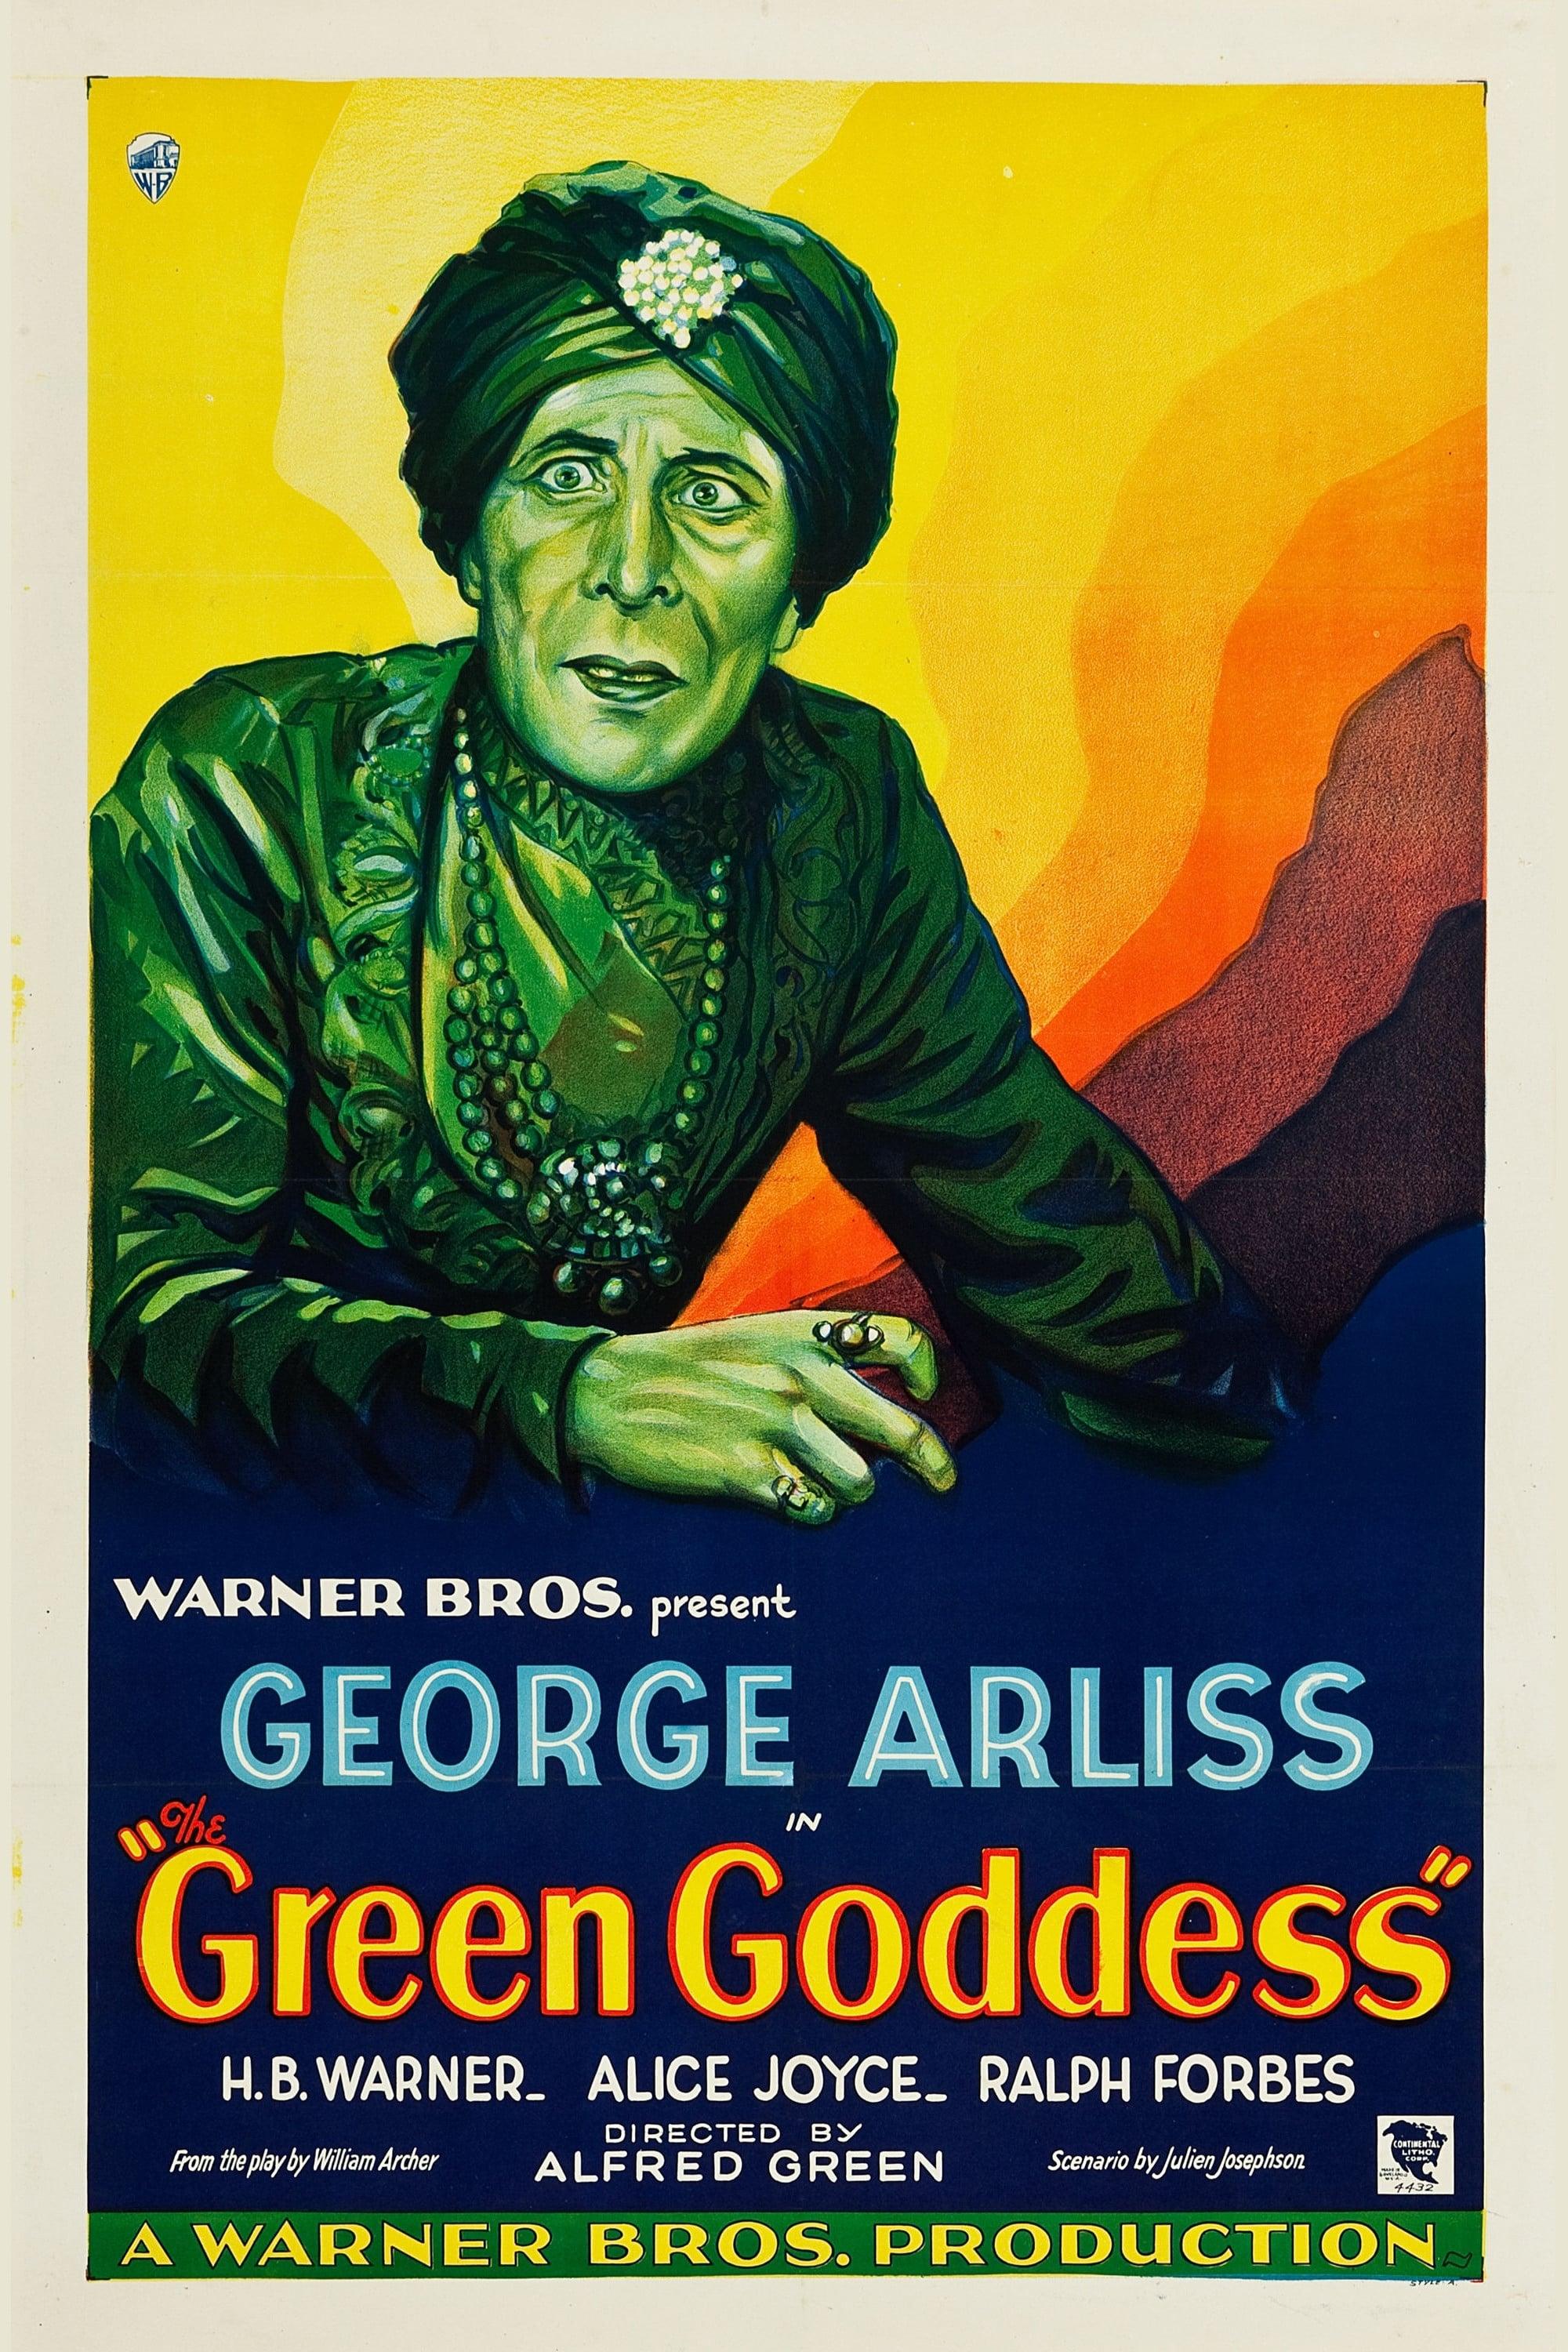 The Green Goddess poster